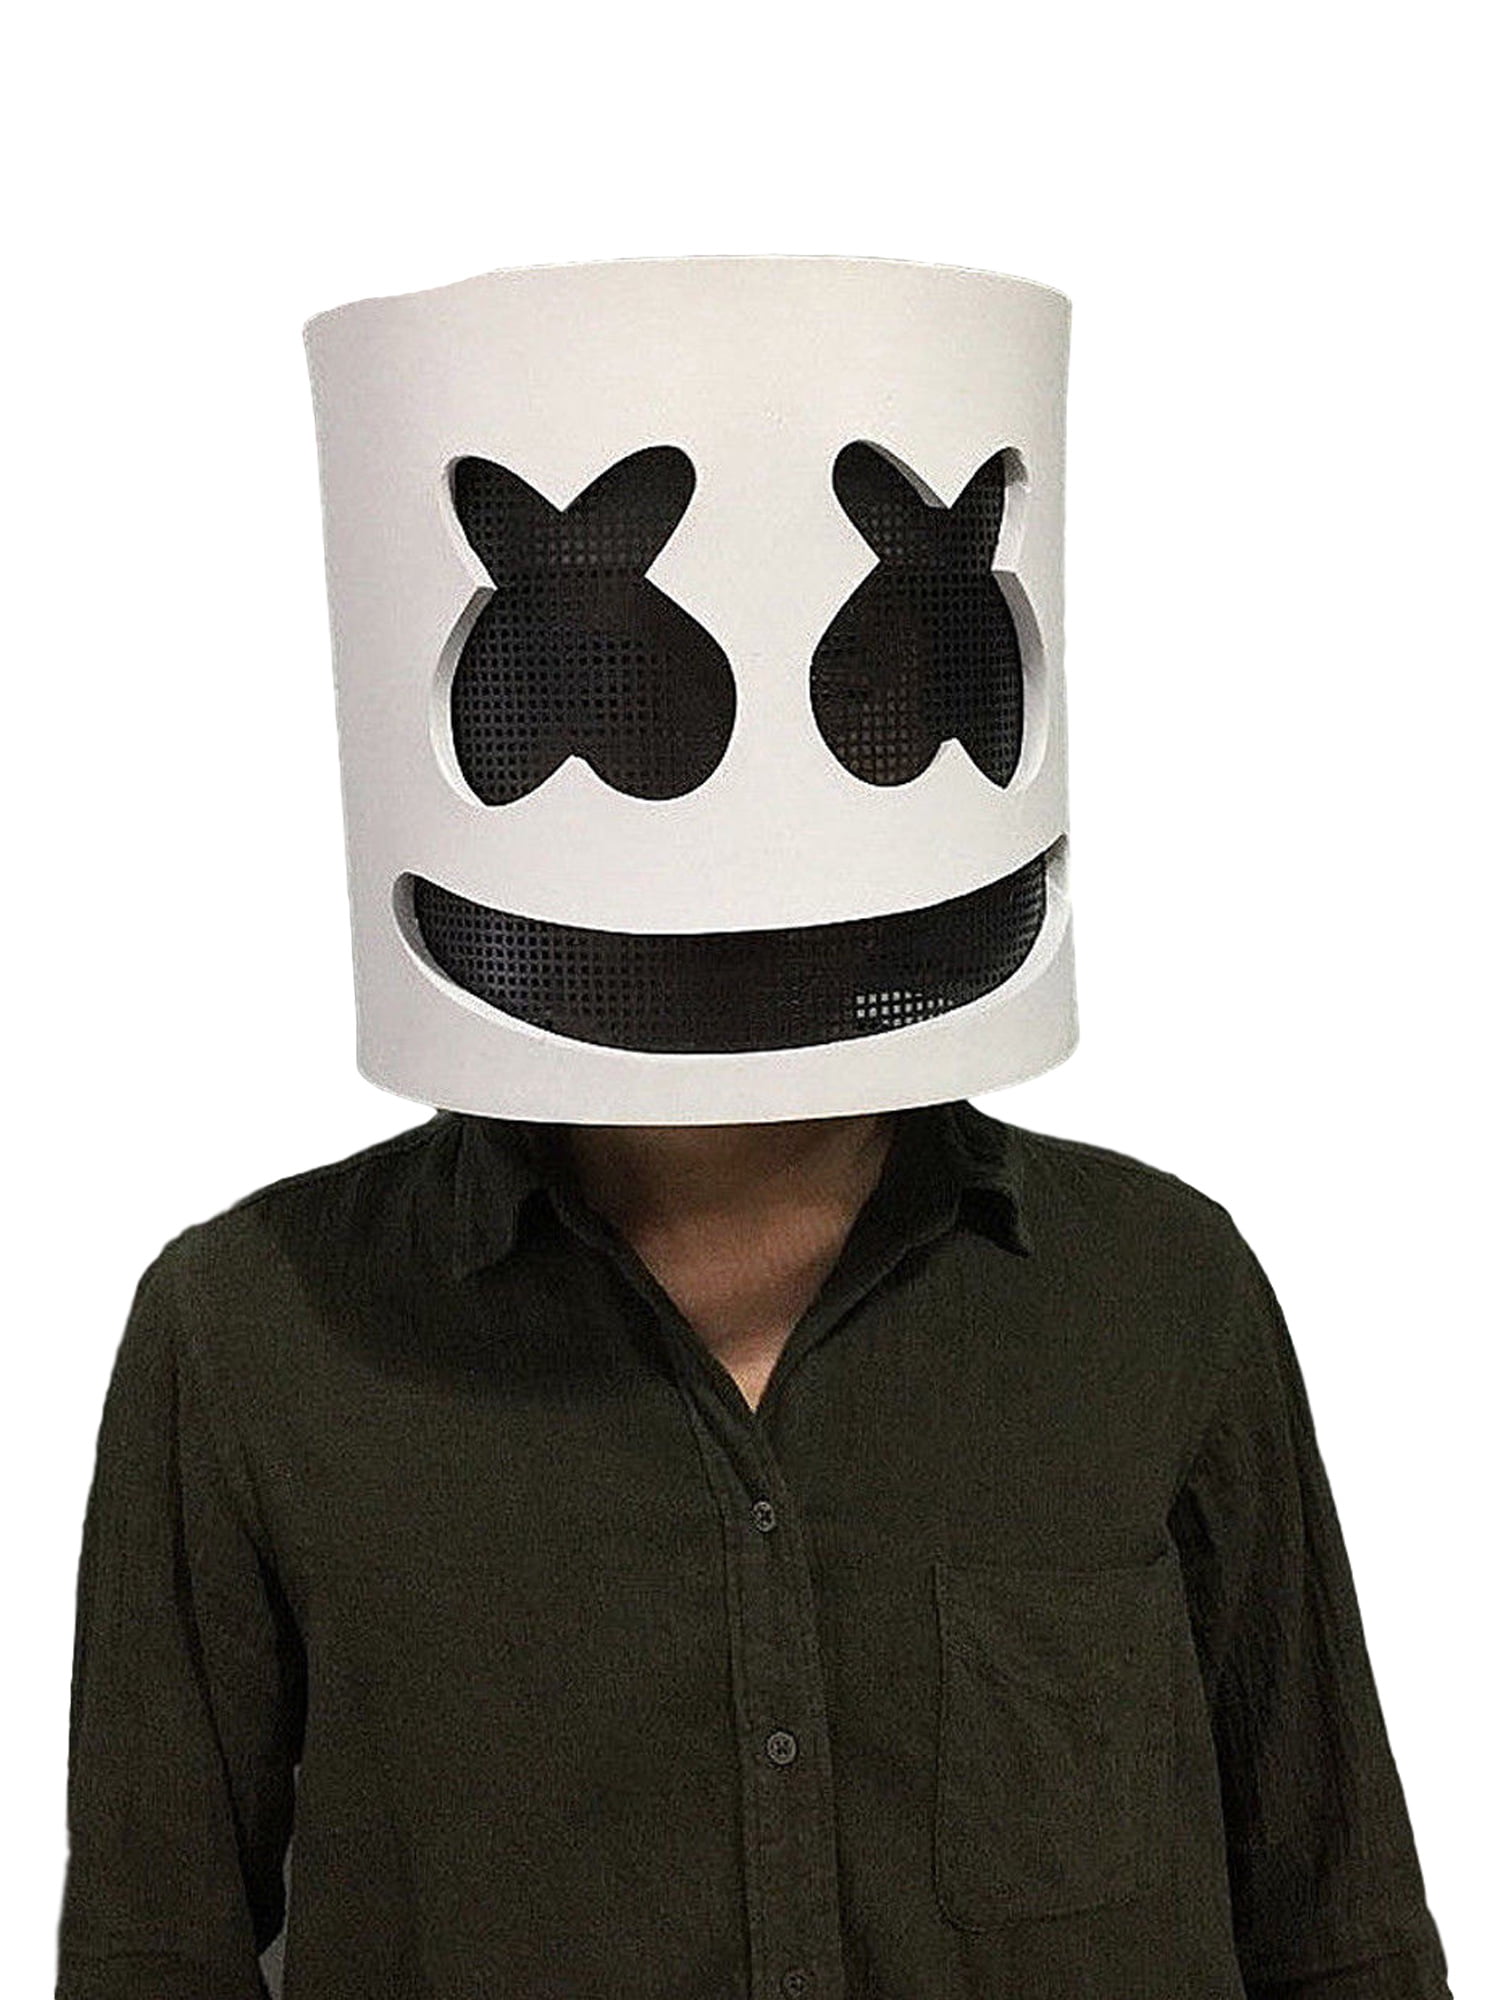 DJ Marshmello Mask Marshmello Helmet for Music Festival Halloween Mask Props Full Head Mask Halloween Costumes Cosplay Mask White 